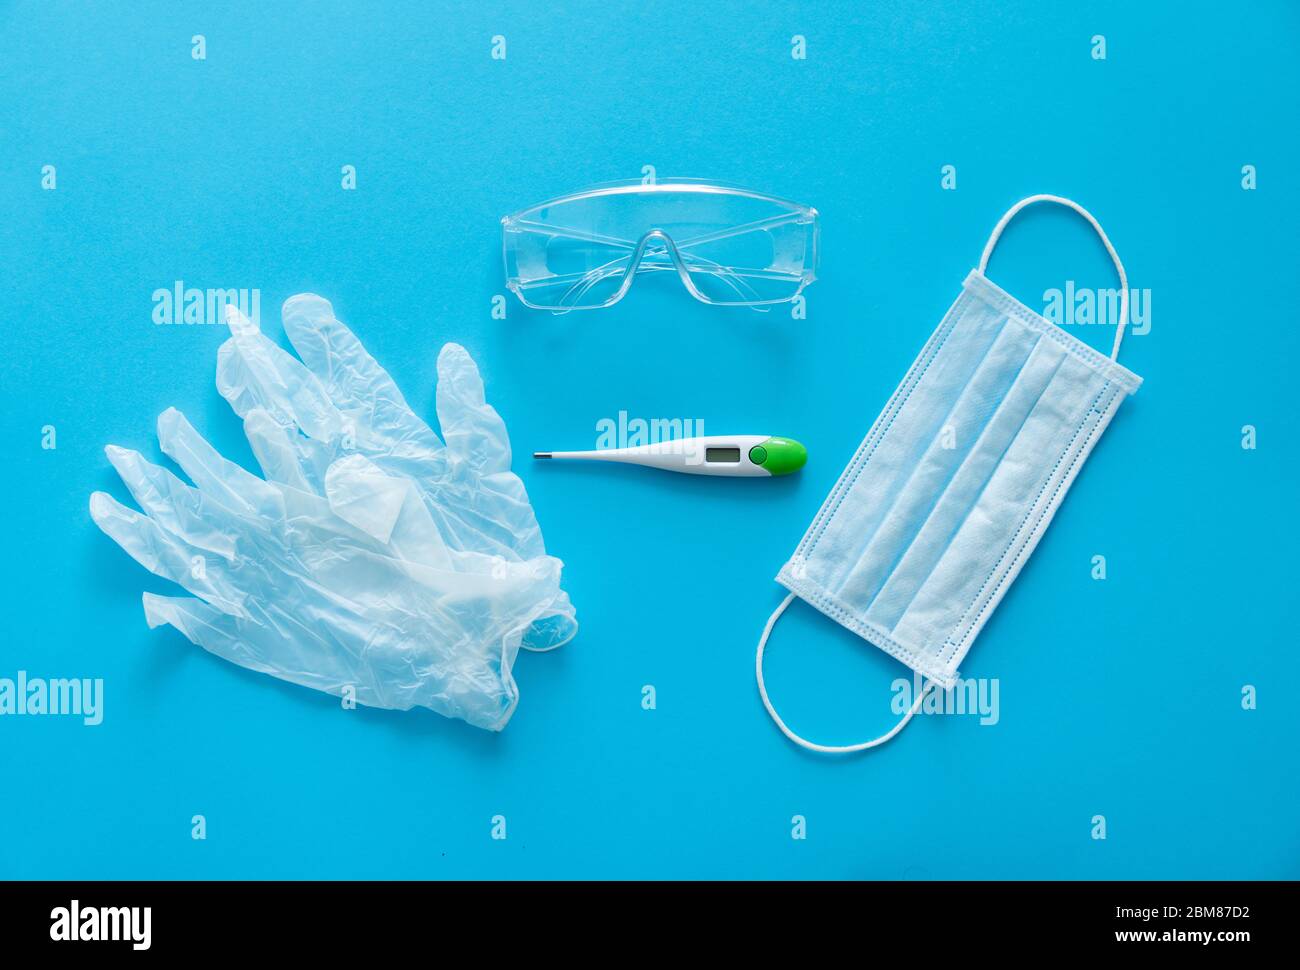 Medizinische Schutzmaske, Gummihandschuhe, Thermometer und Schutzbrille liegen auf blauem Hintergrund. Anti-Virus-Schutz-Kit gegen covid-19. Coron Stockfoto